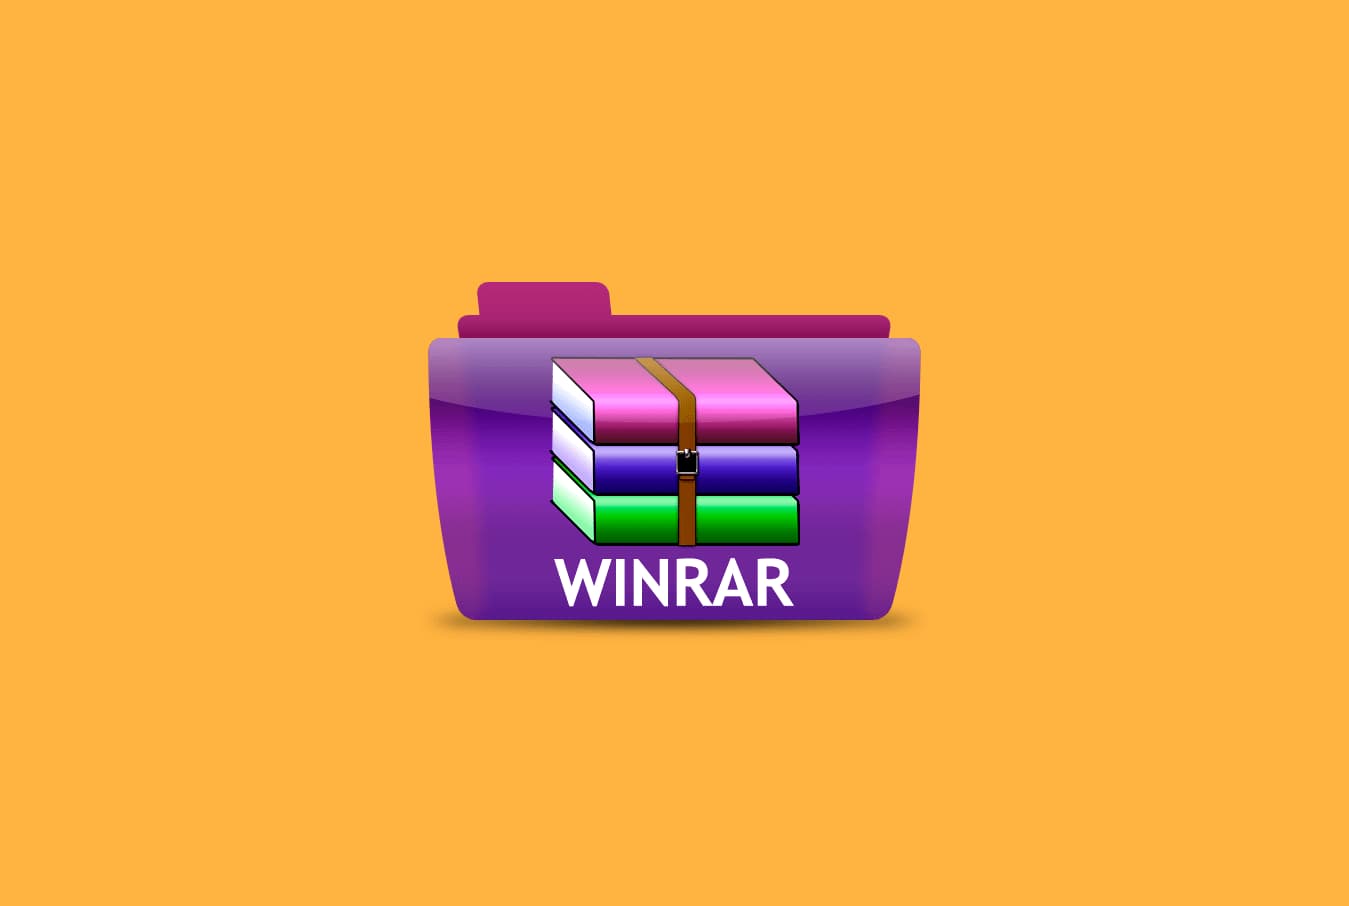 Download WinRAR Terbaru 32 bit & 64 bit